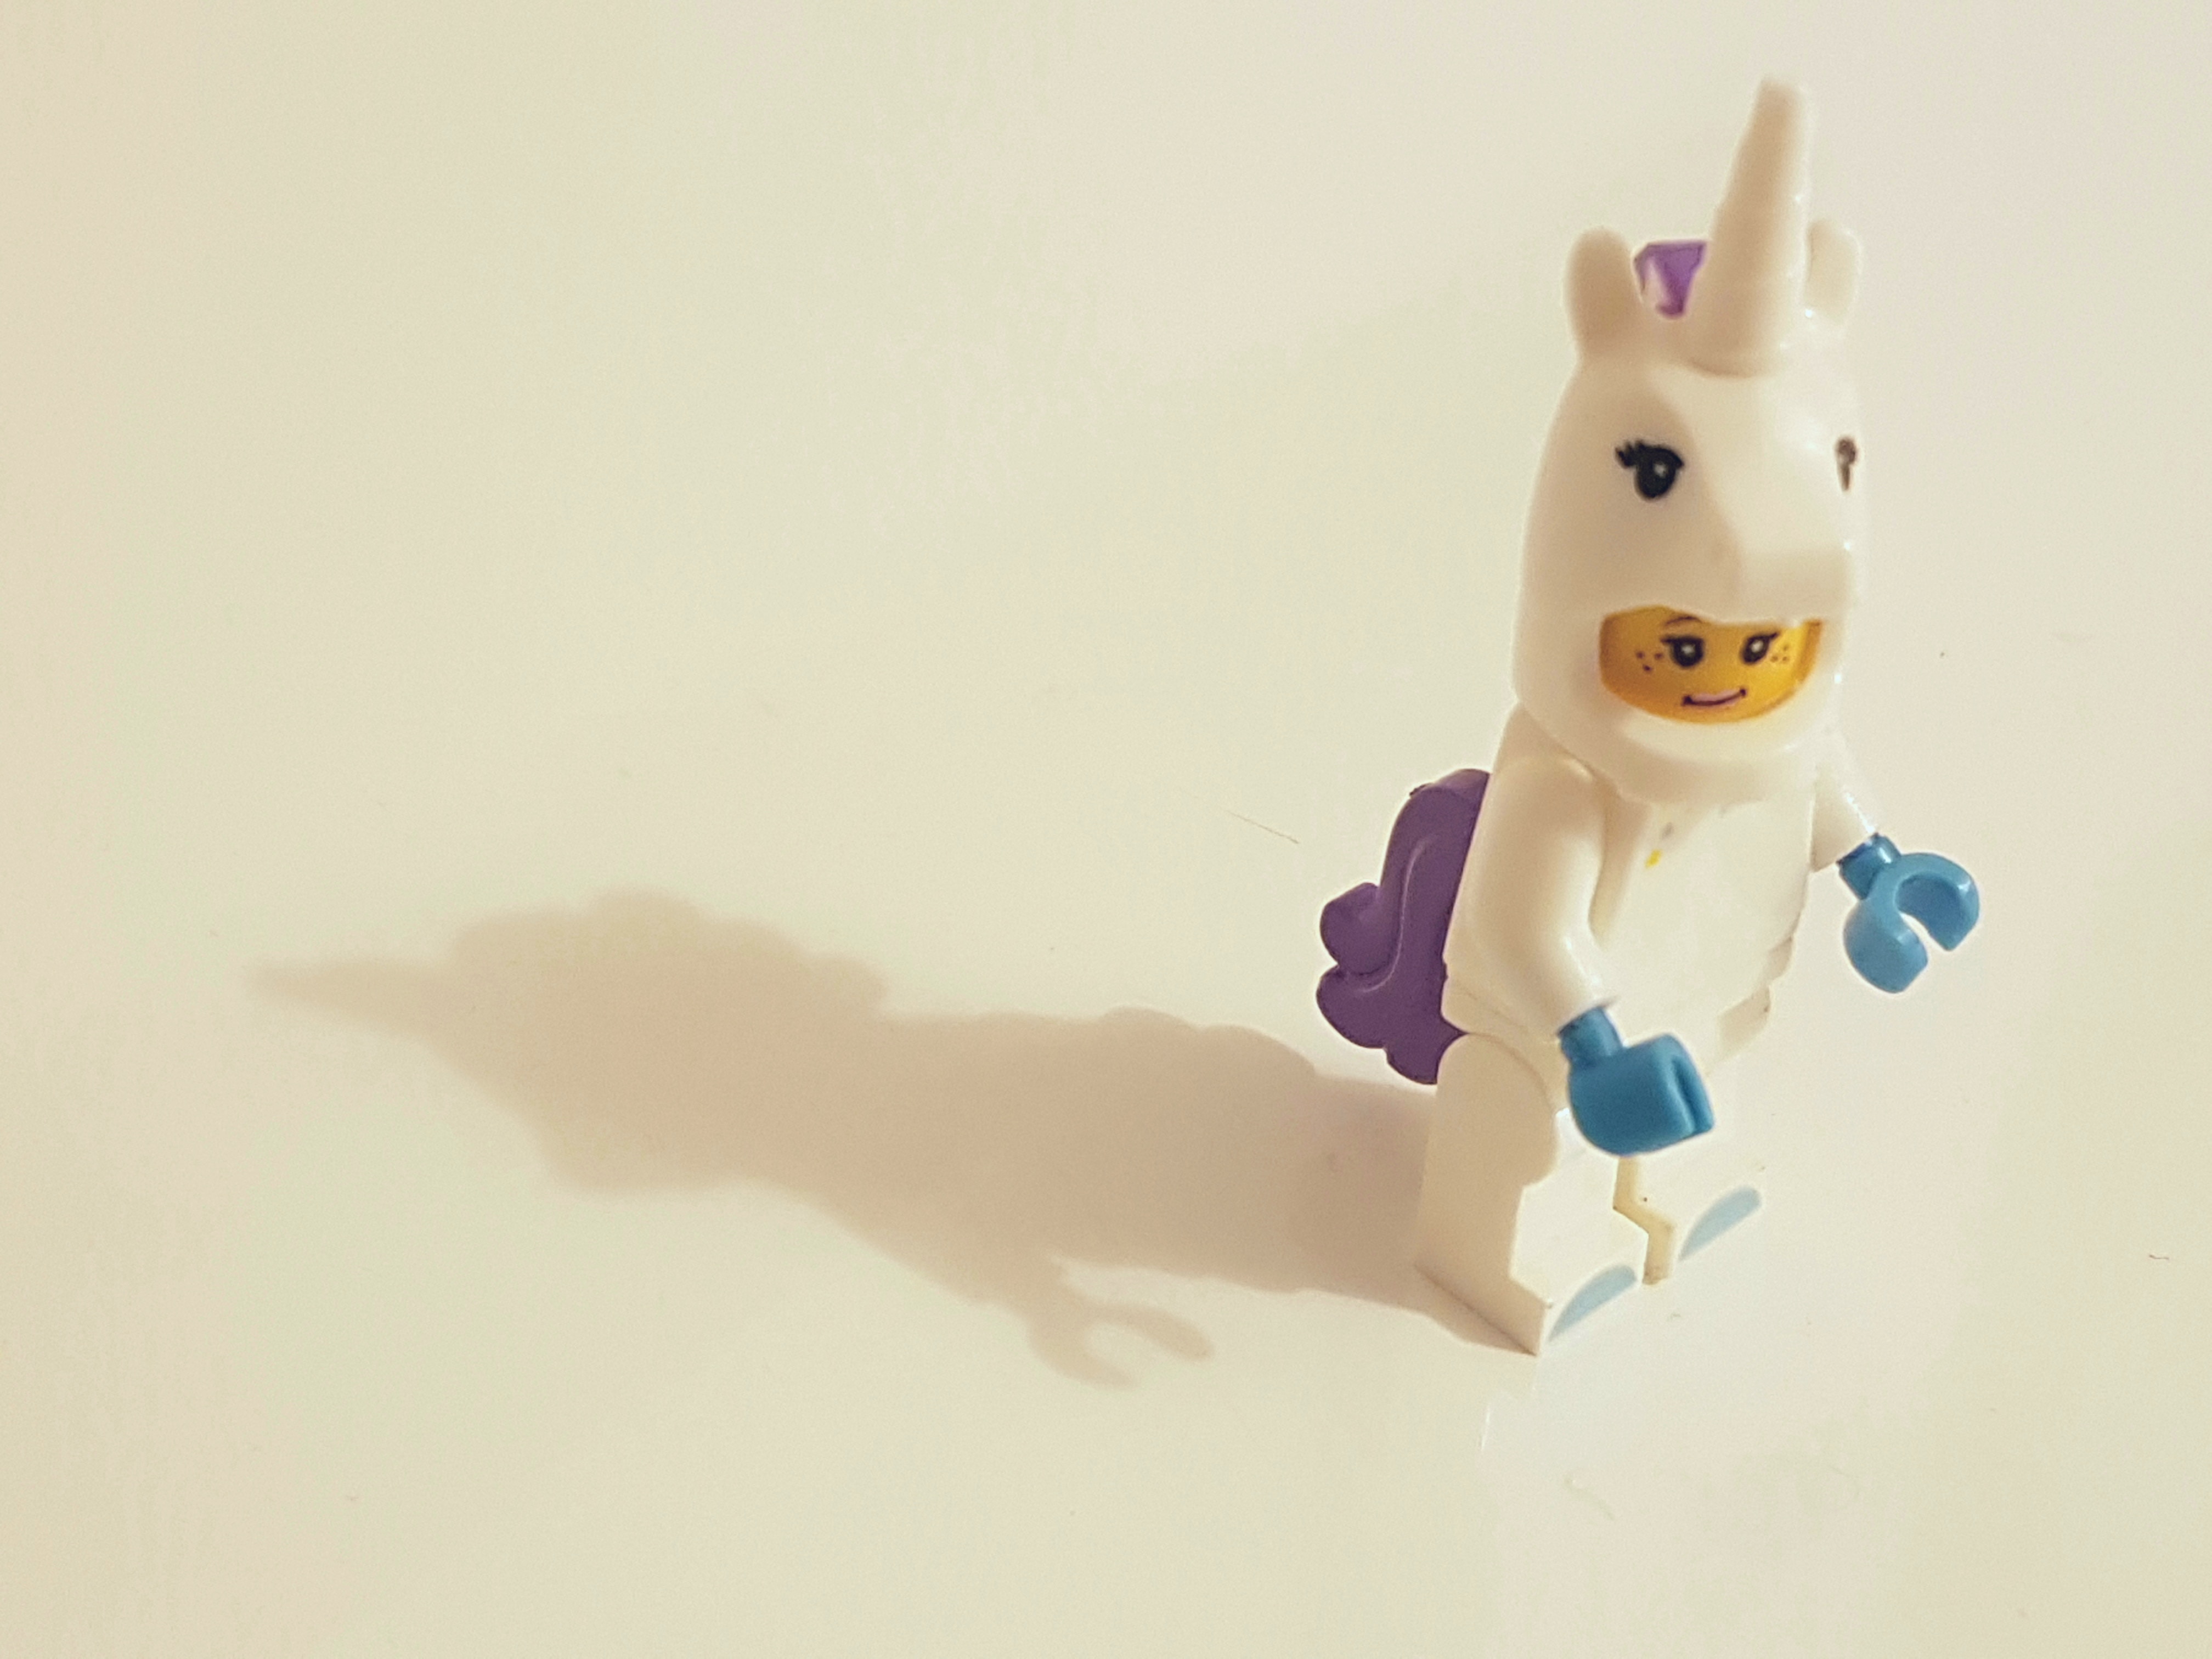 Lego unicorn figurine